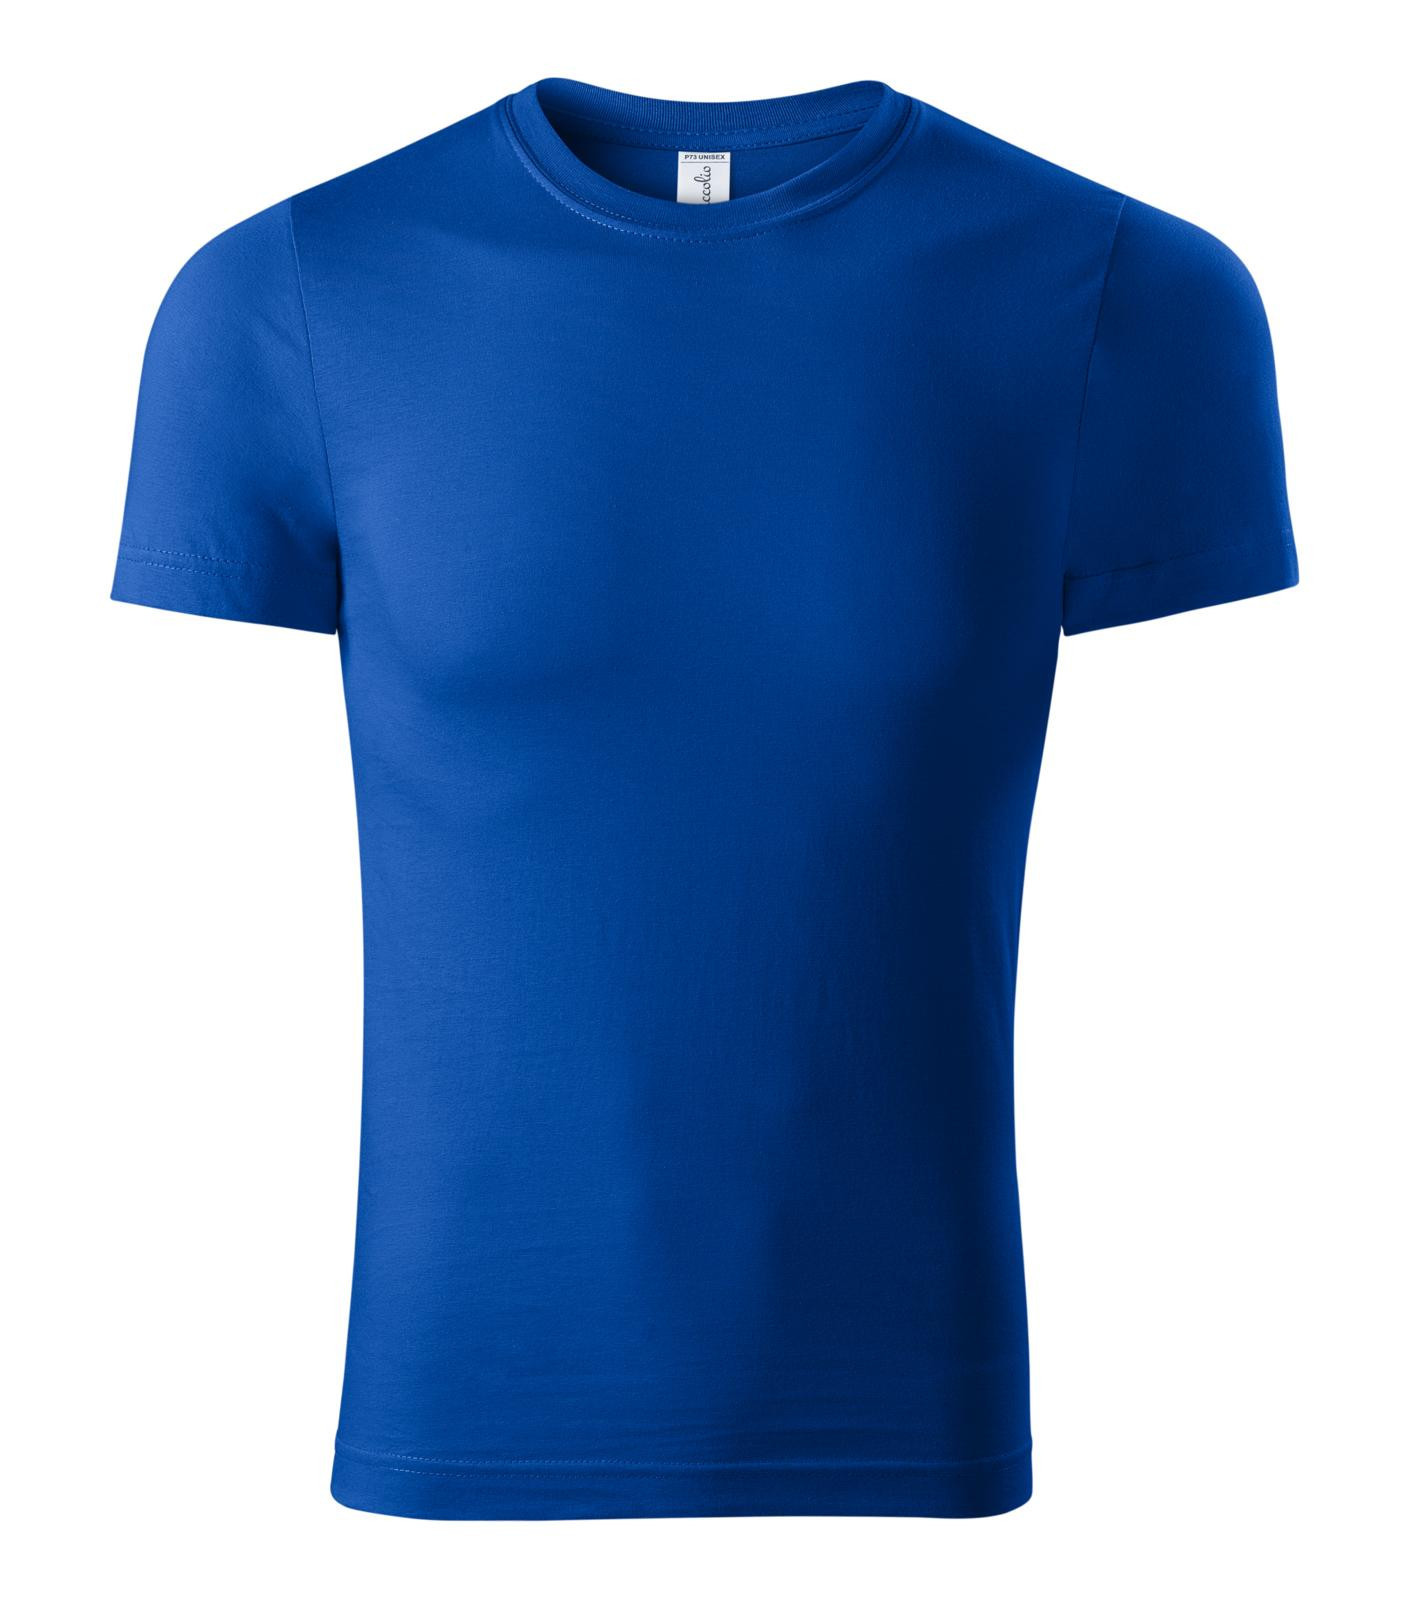 Unisex tričko Piccolio Paint P73 - veľkosť: L, farba: kráľovská modrá